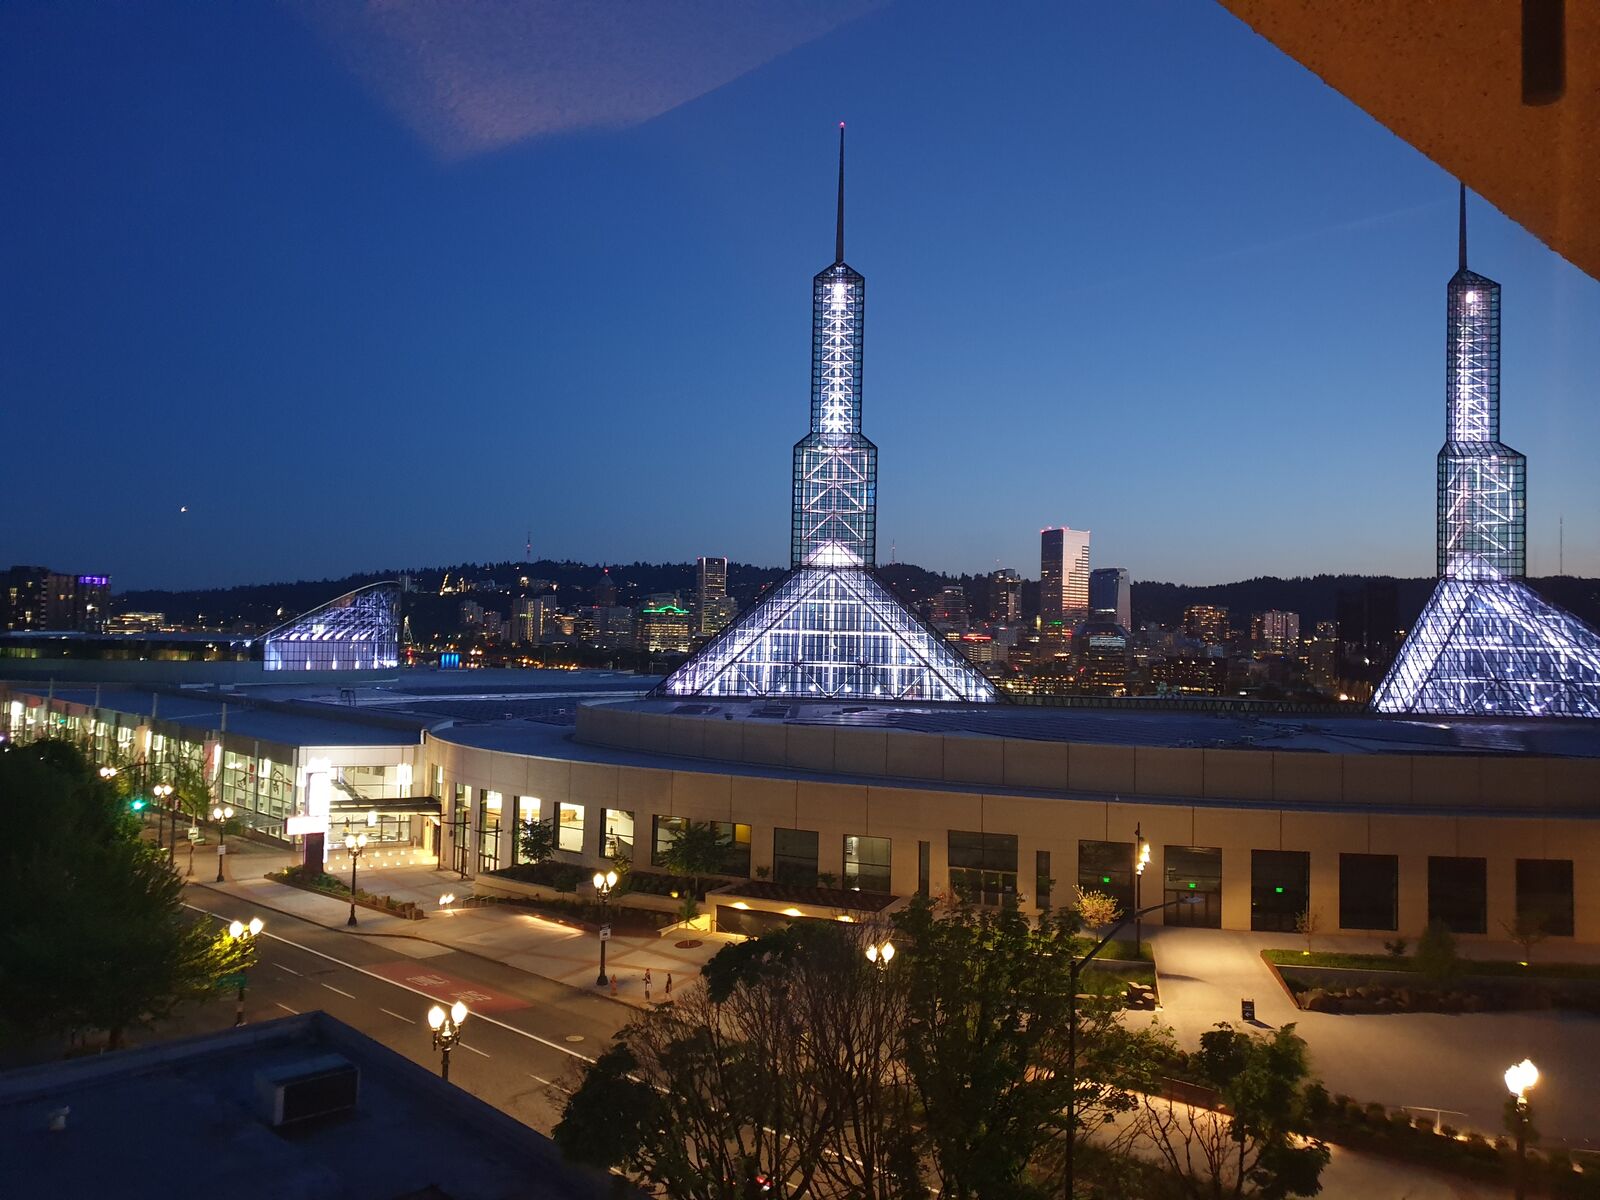 Das Oregon Conferention Center hat zwei sehr markante Glastürme, die man von der ganzen Stadt aus gut sehen kann.